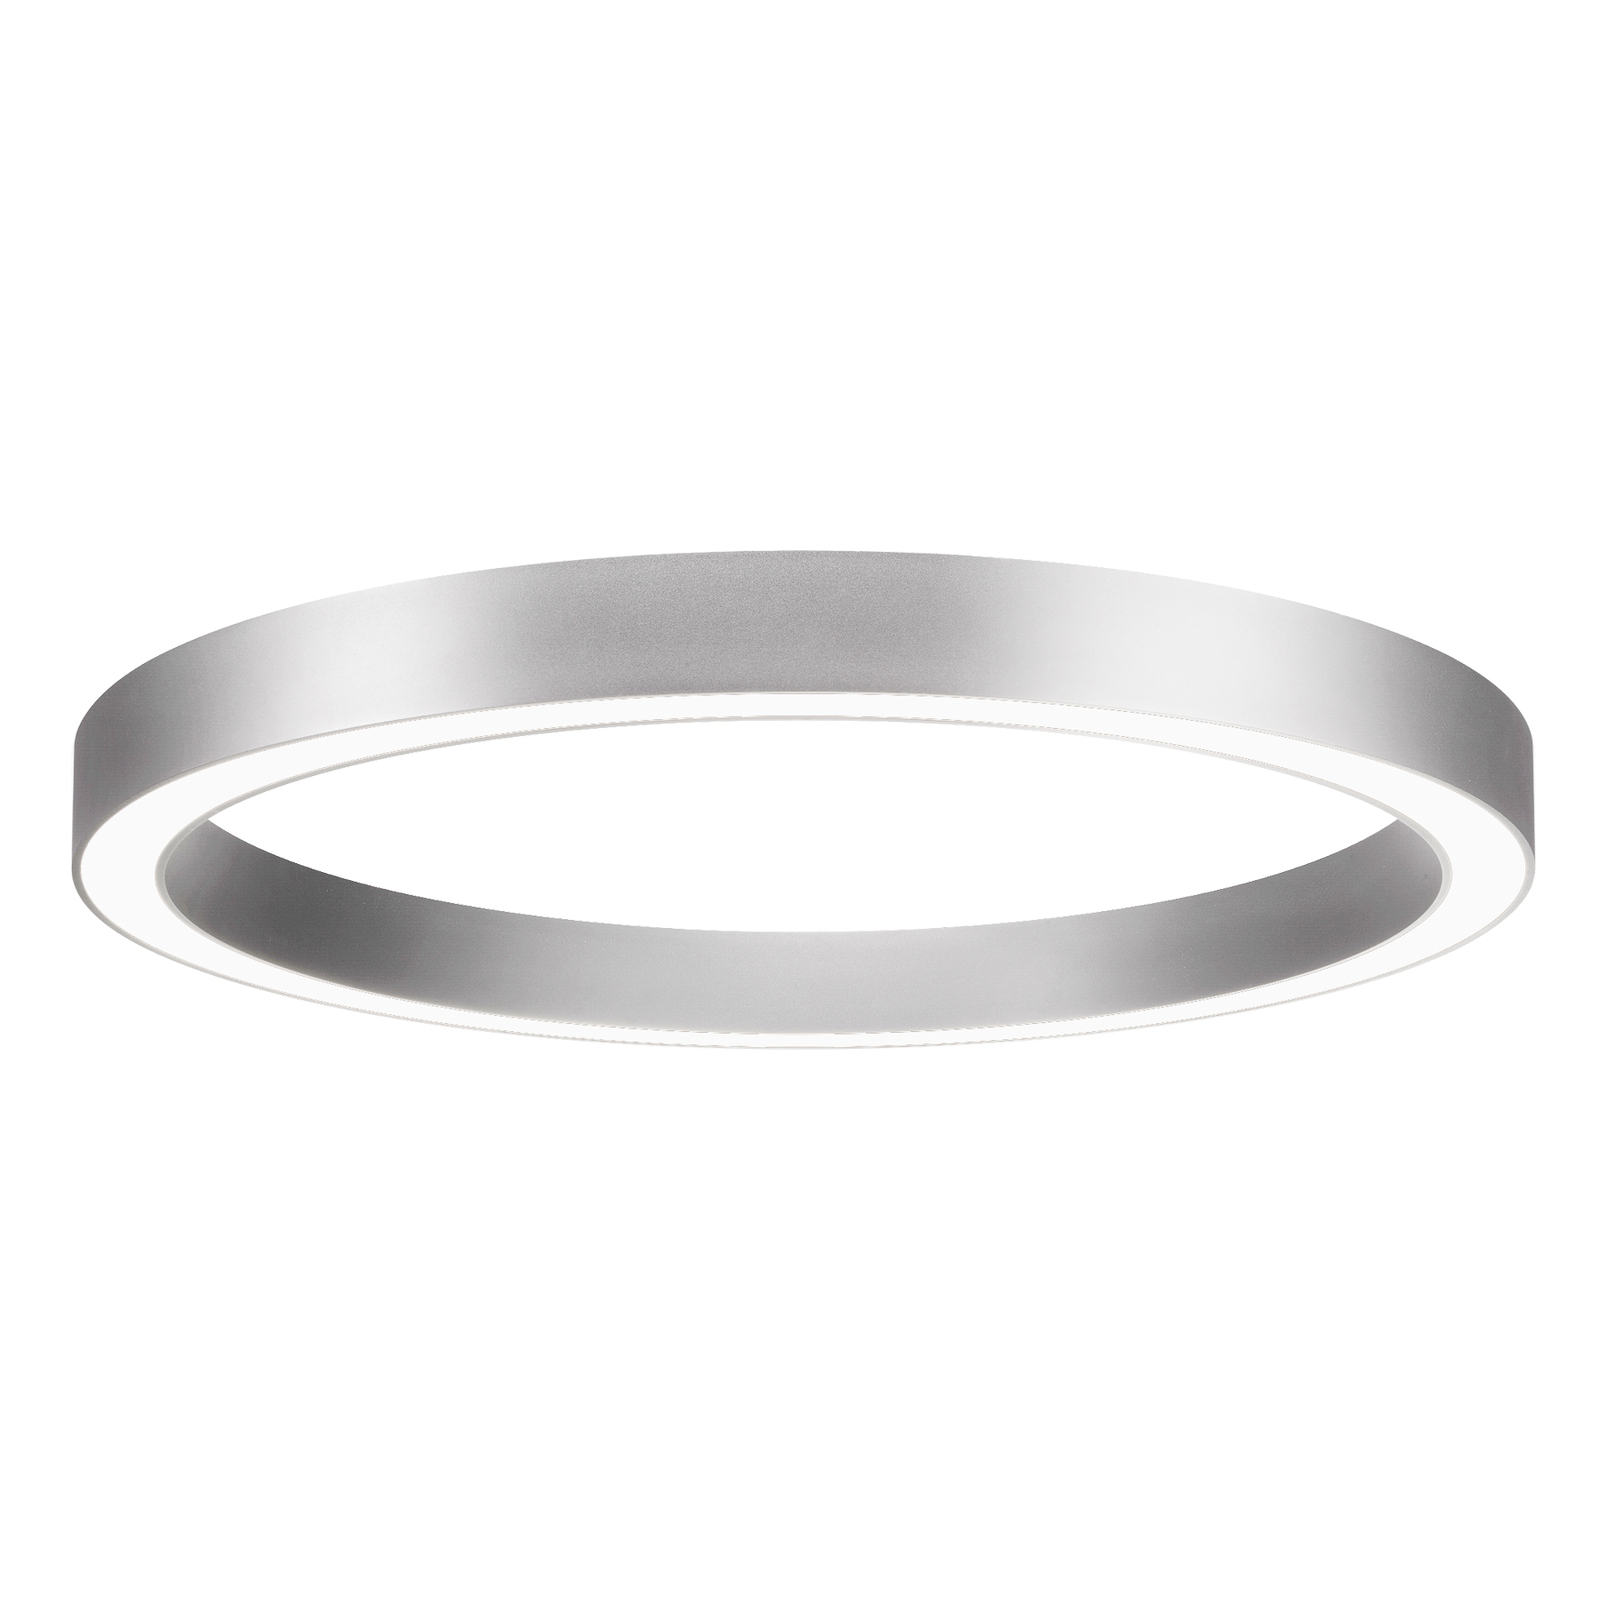 BRUMBERG Biro Circle Ring, Ø 45 cm, włącz/wyłącz, srebrny, 4000 K